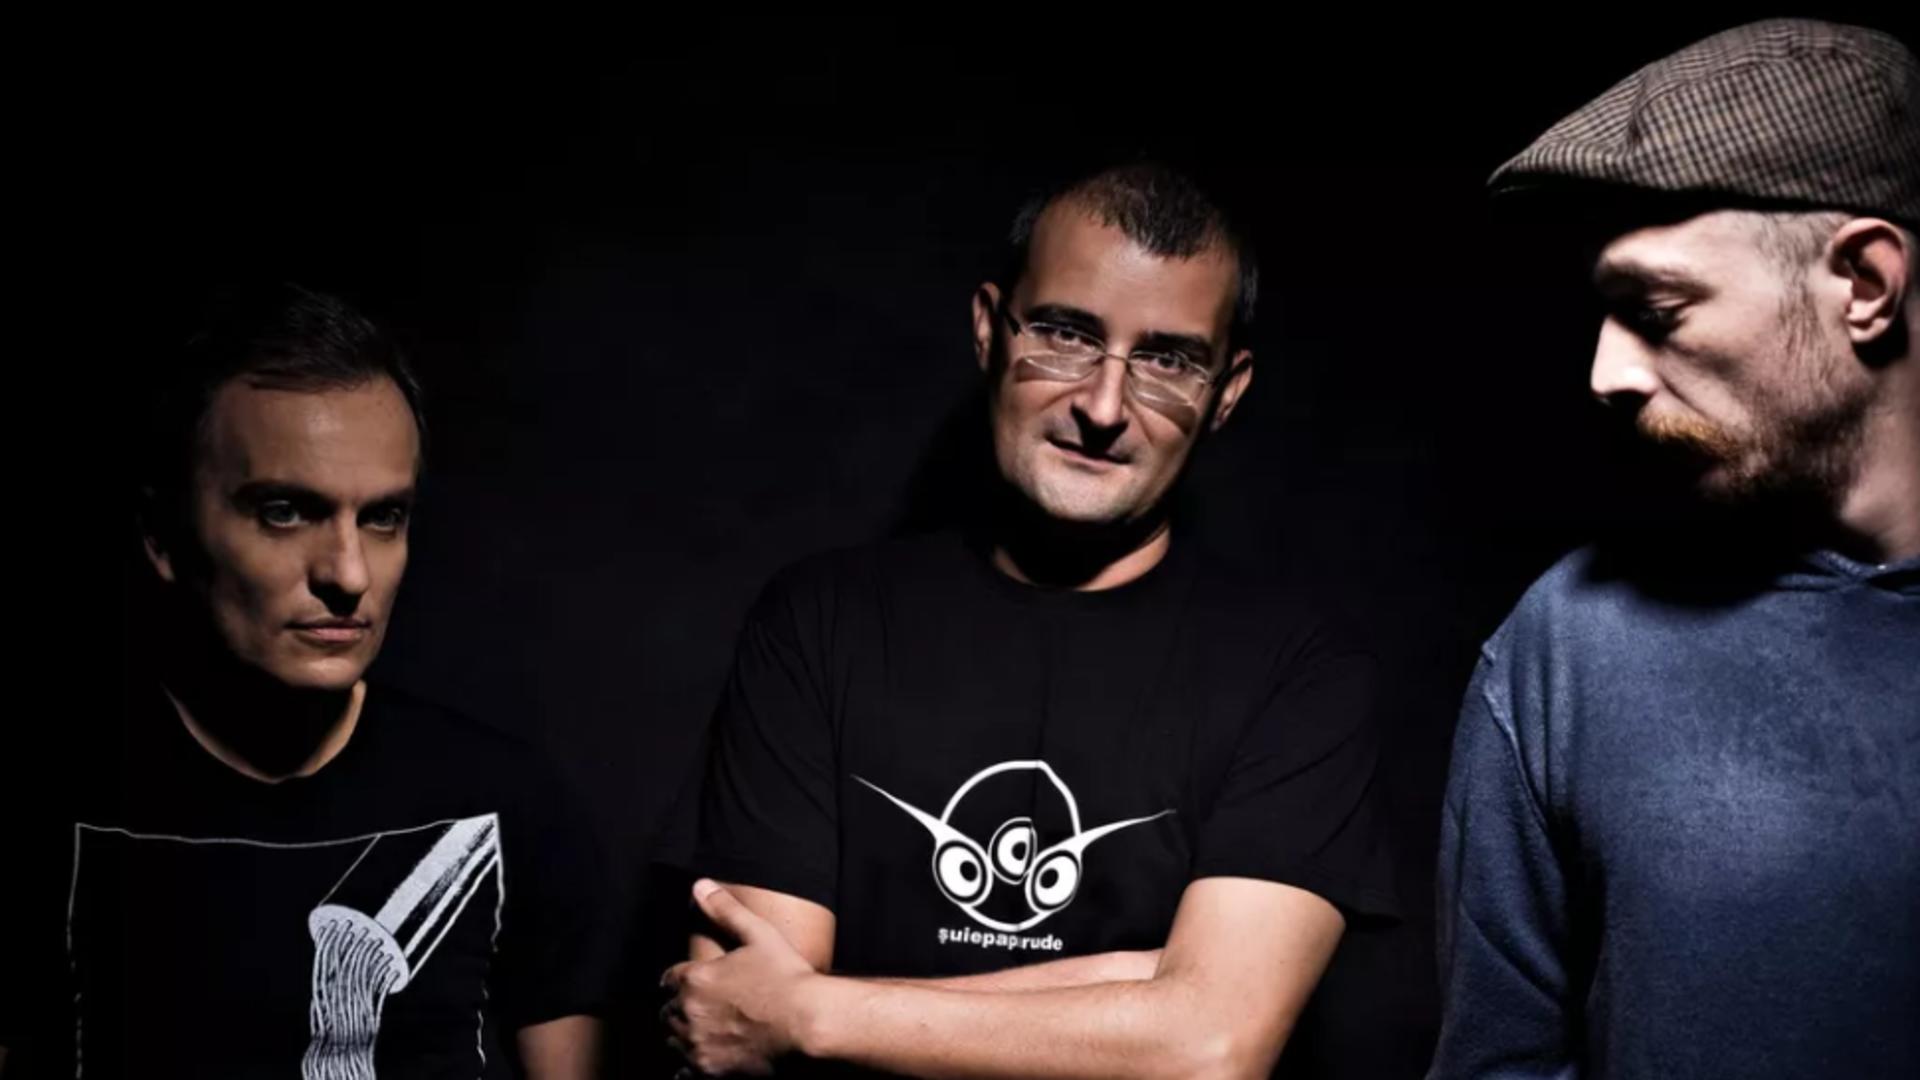 Cei 3 membri ai trupei Șuie Paparude, răniți într-un accident în Timișoara - Anunț despre concertul de joi seară - VIDEO